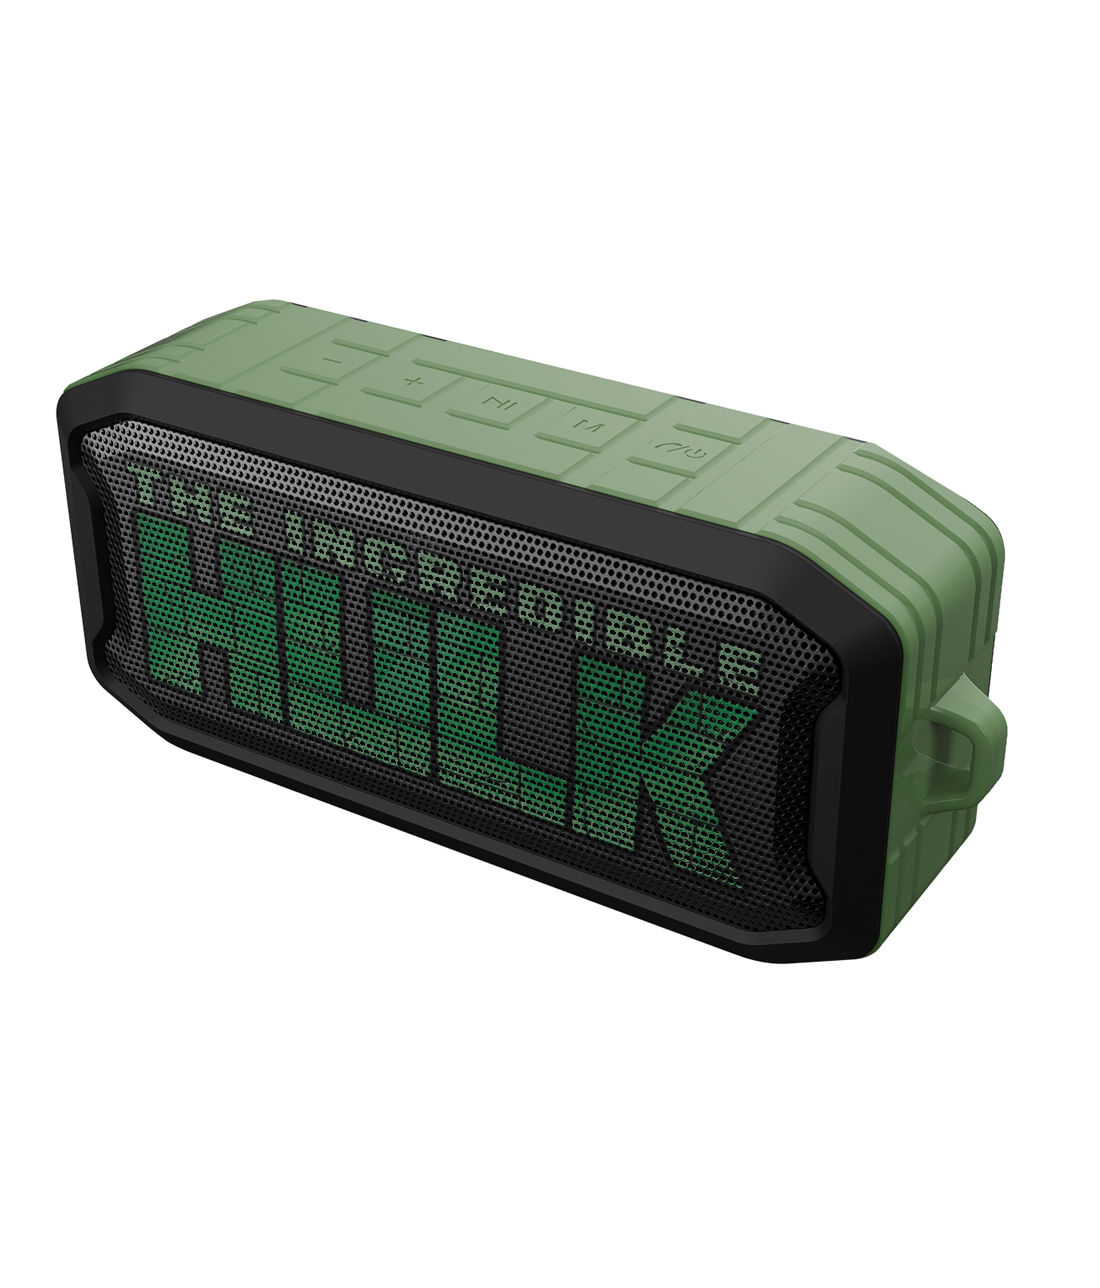 Buy The Incredible Hulk - Macmerise Nuke Bluetooth Speaker Speakers Online